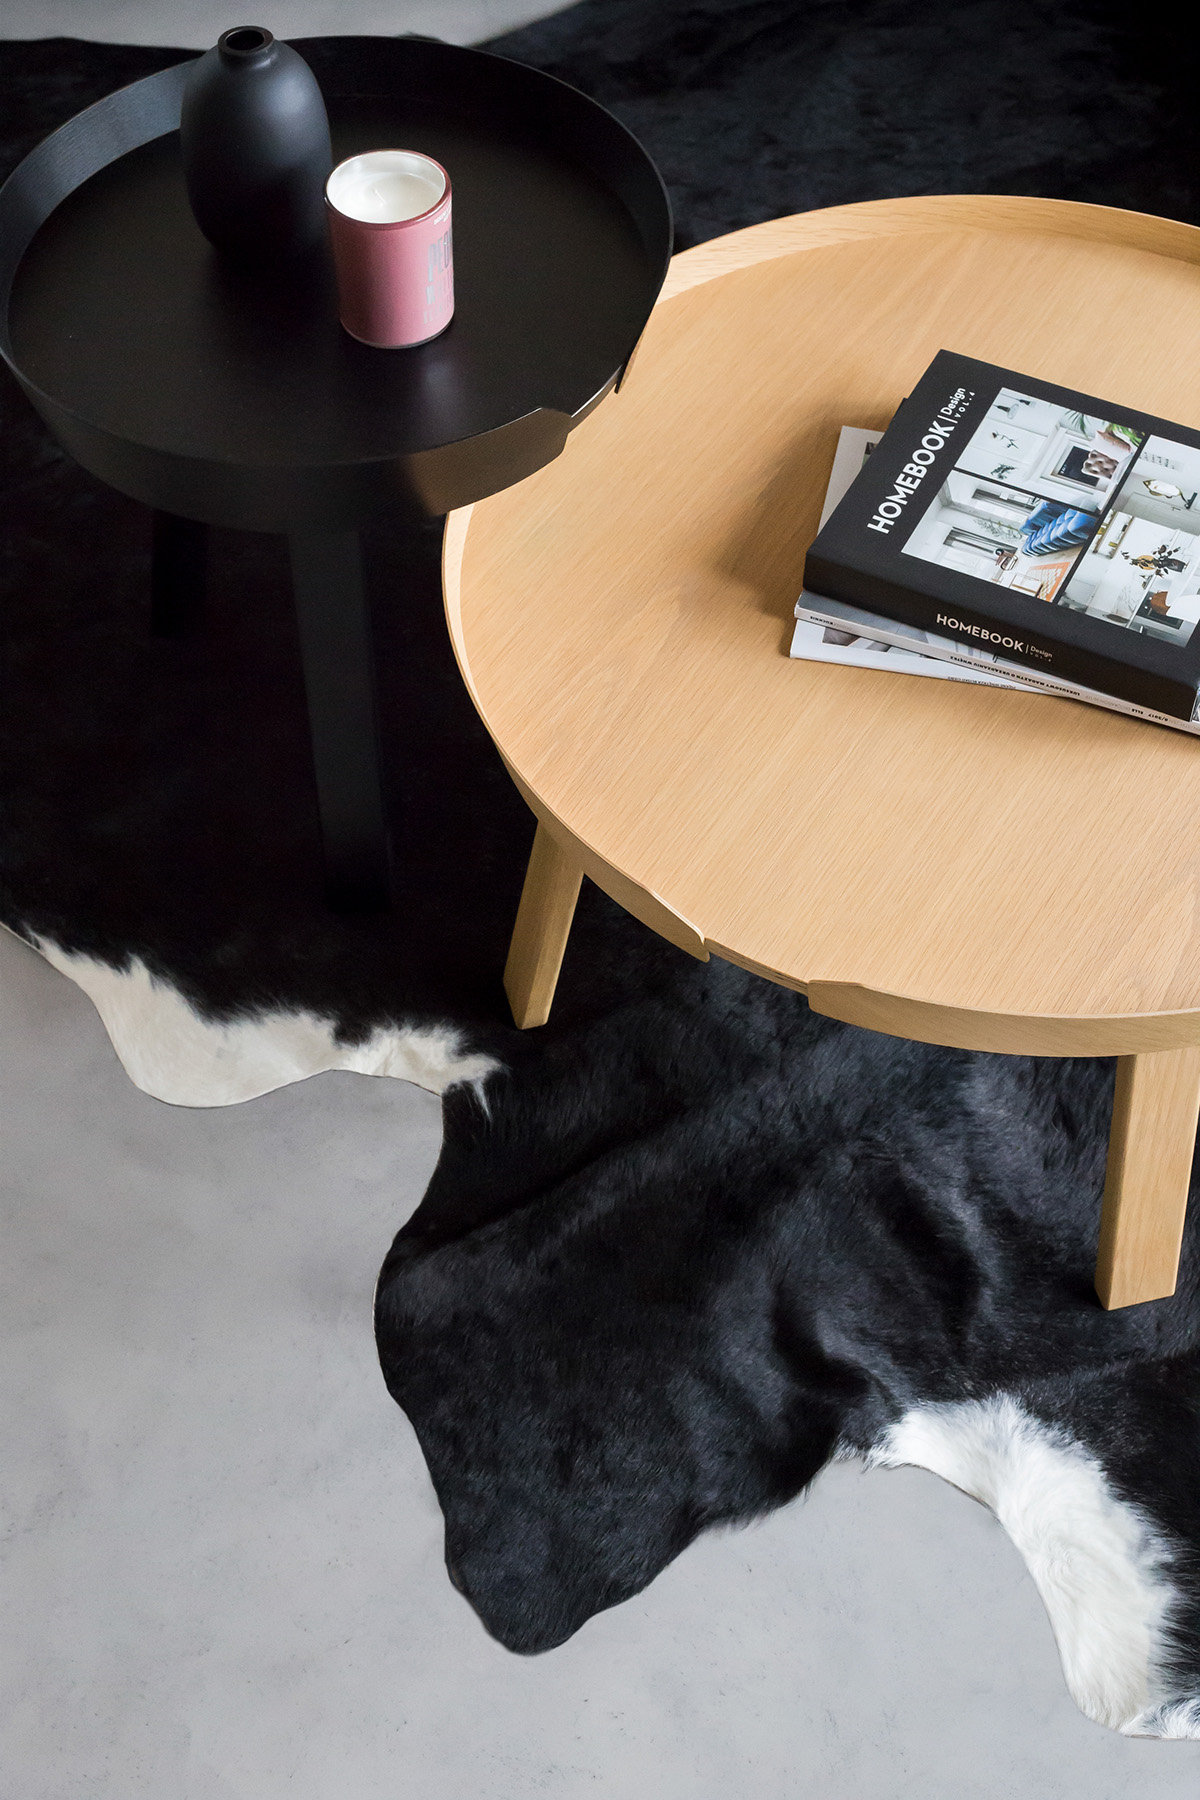 Bộ bàn cafe tròn đặt trên một tấm thảm giả lông động vật màu đen và trắng hoàn toàn hòa hợp với không gian tổng thể của phòng khách. Chiếc cốc nến trang trí đặt trên bàn là điểm nhấn màu hồng đầu tiên của ngôi nhà.